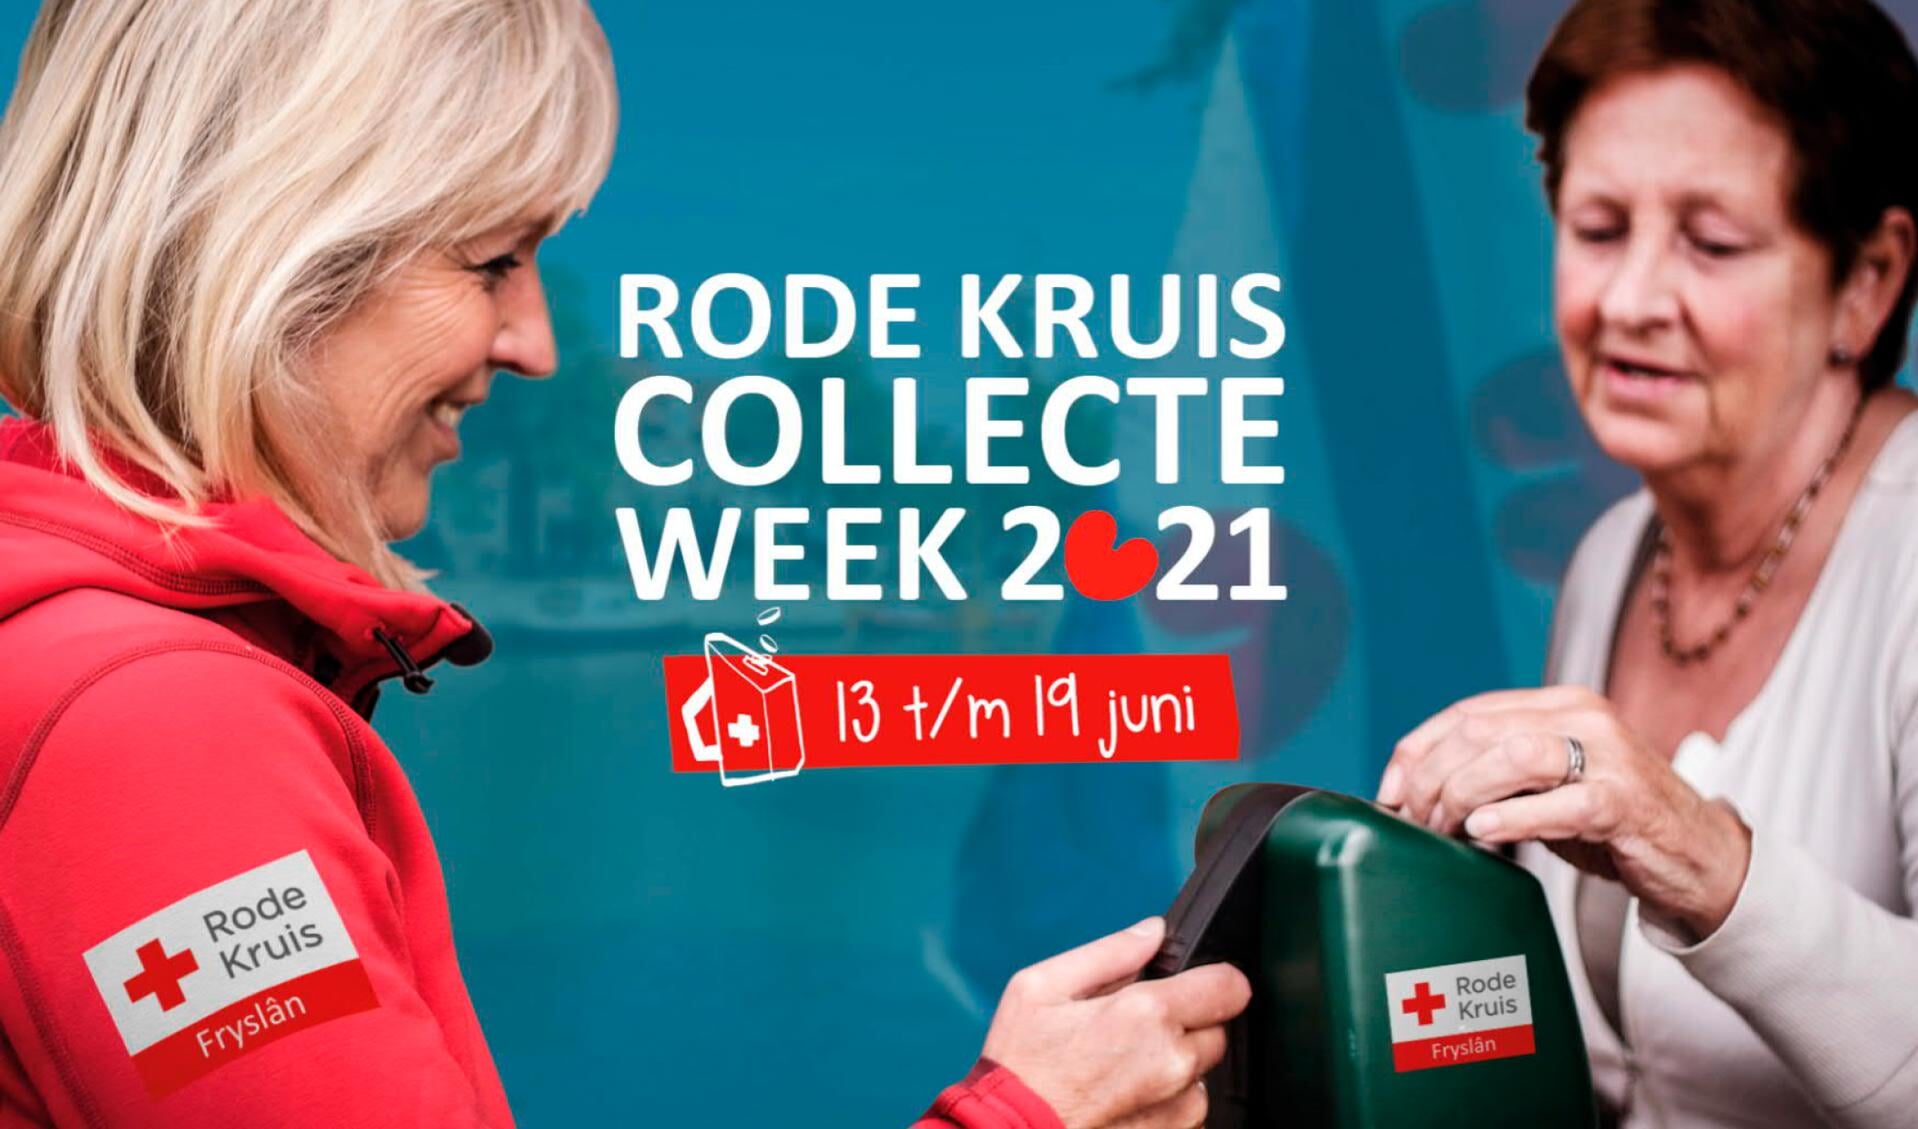 De Rode Kruis Collecteweek is van 13 t/m 19 juni 2021.